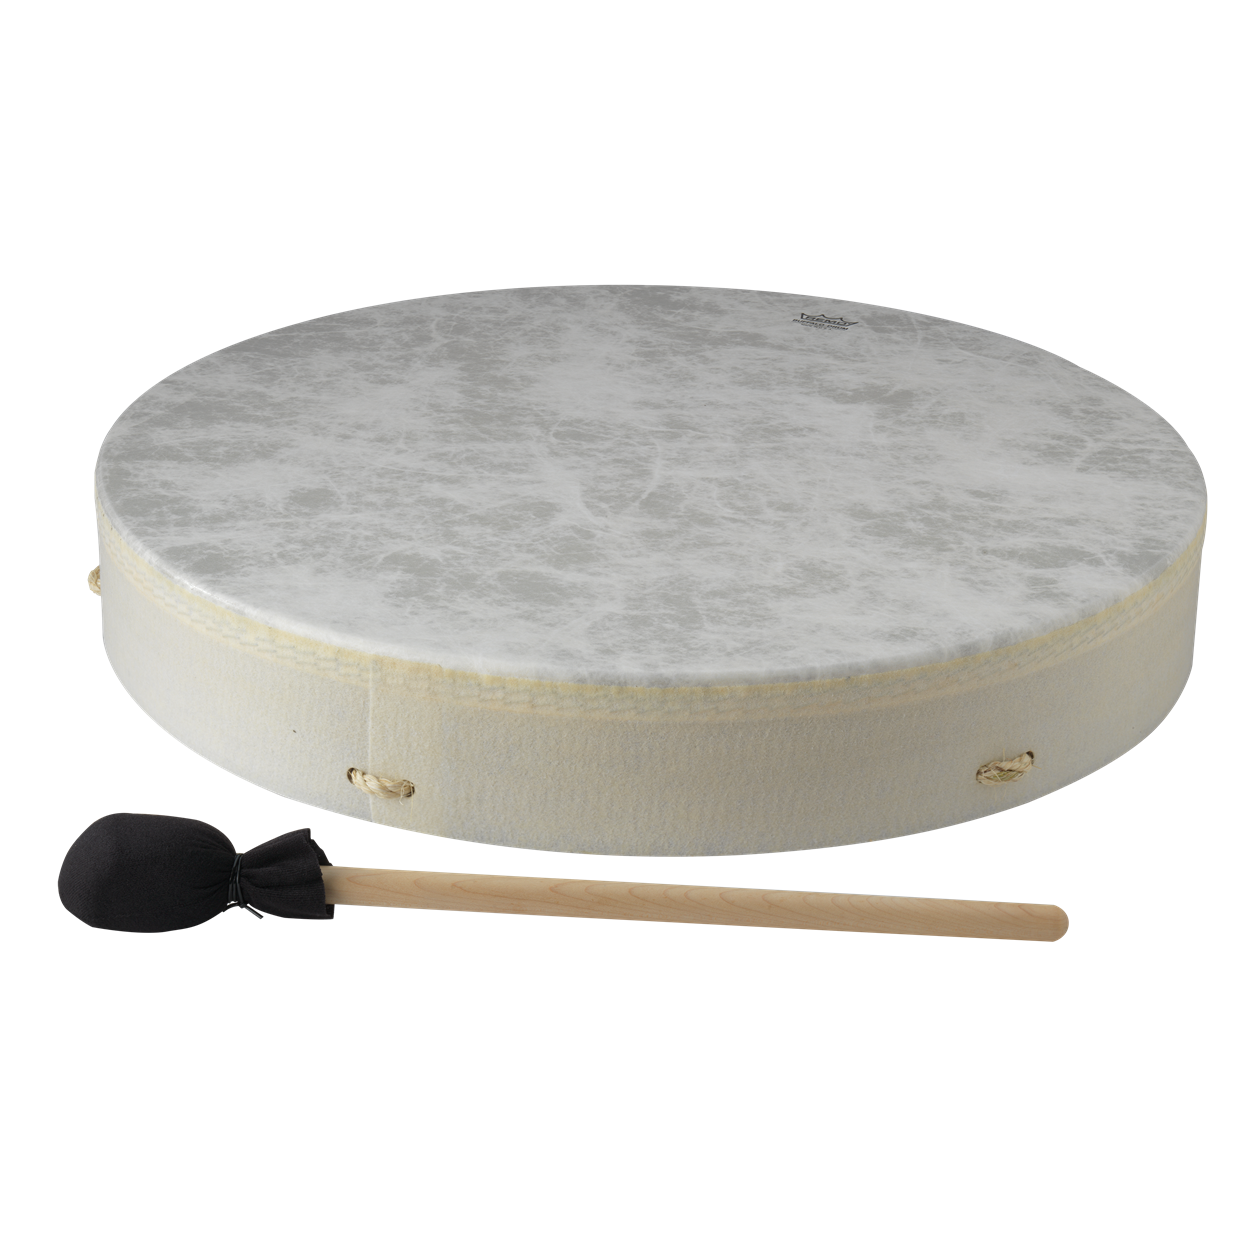 Vegane Buffalo Drum ø 50 cm mit Schlägel | Perkussion | Schamanentrommel | Dunum.ch